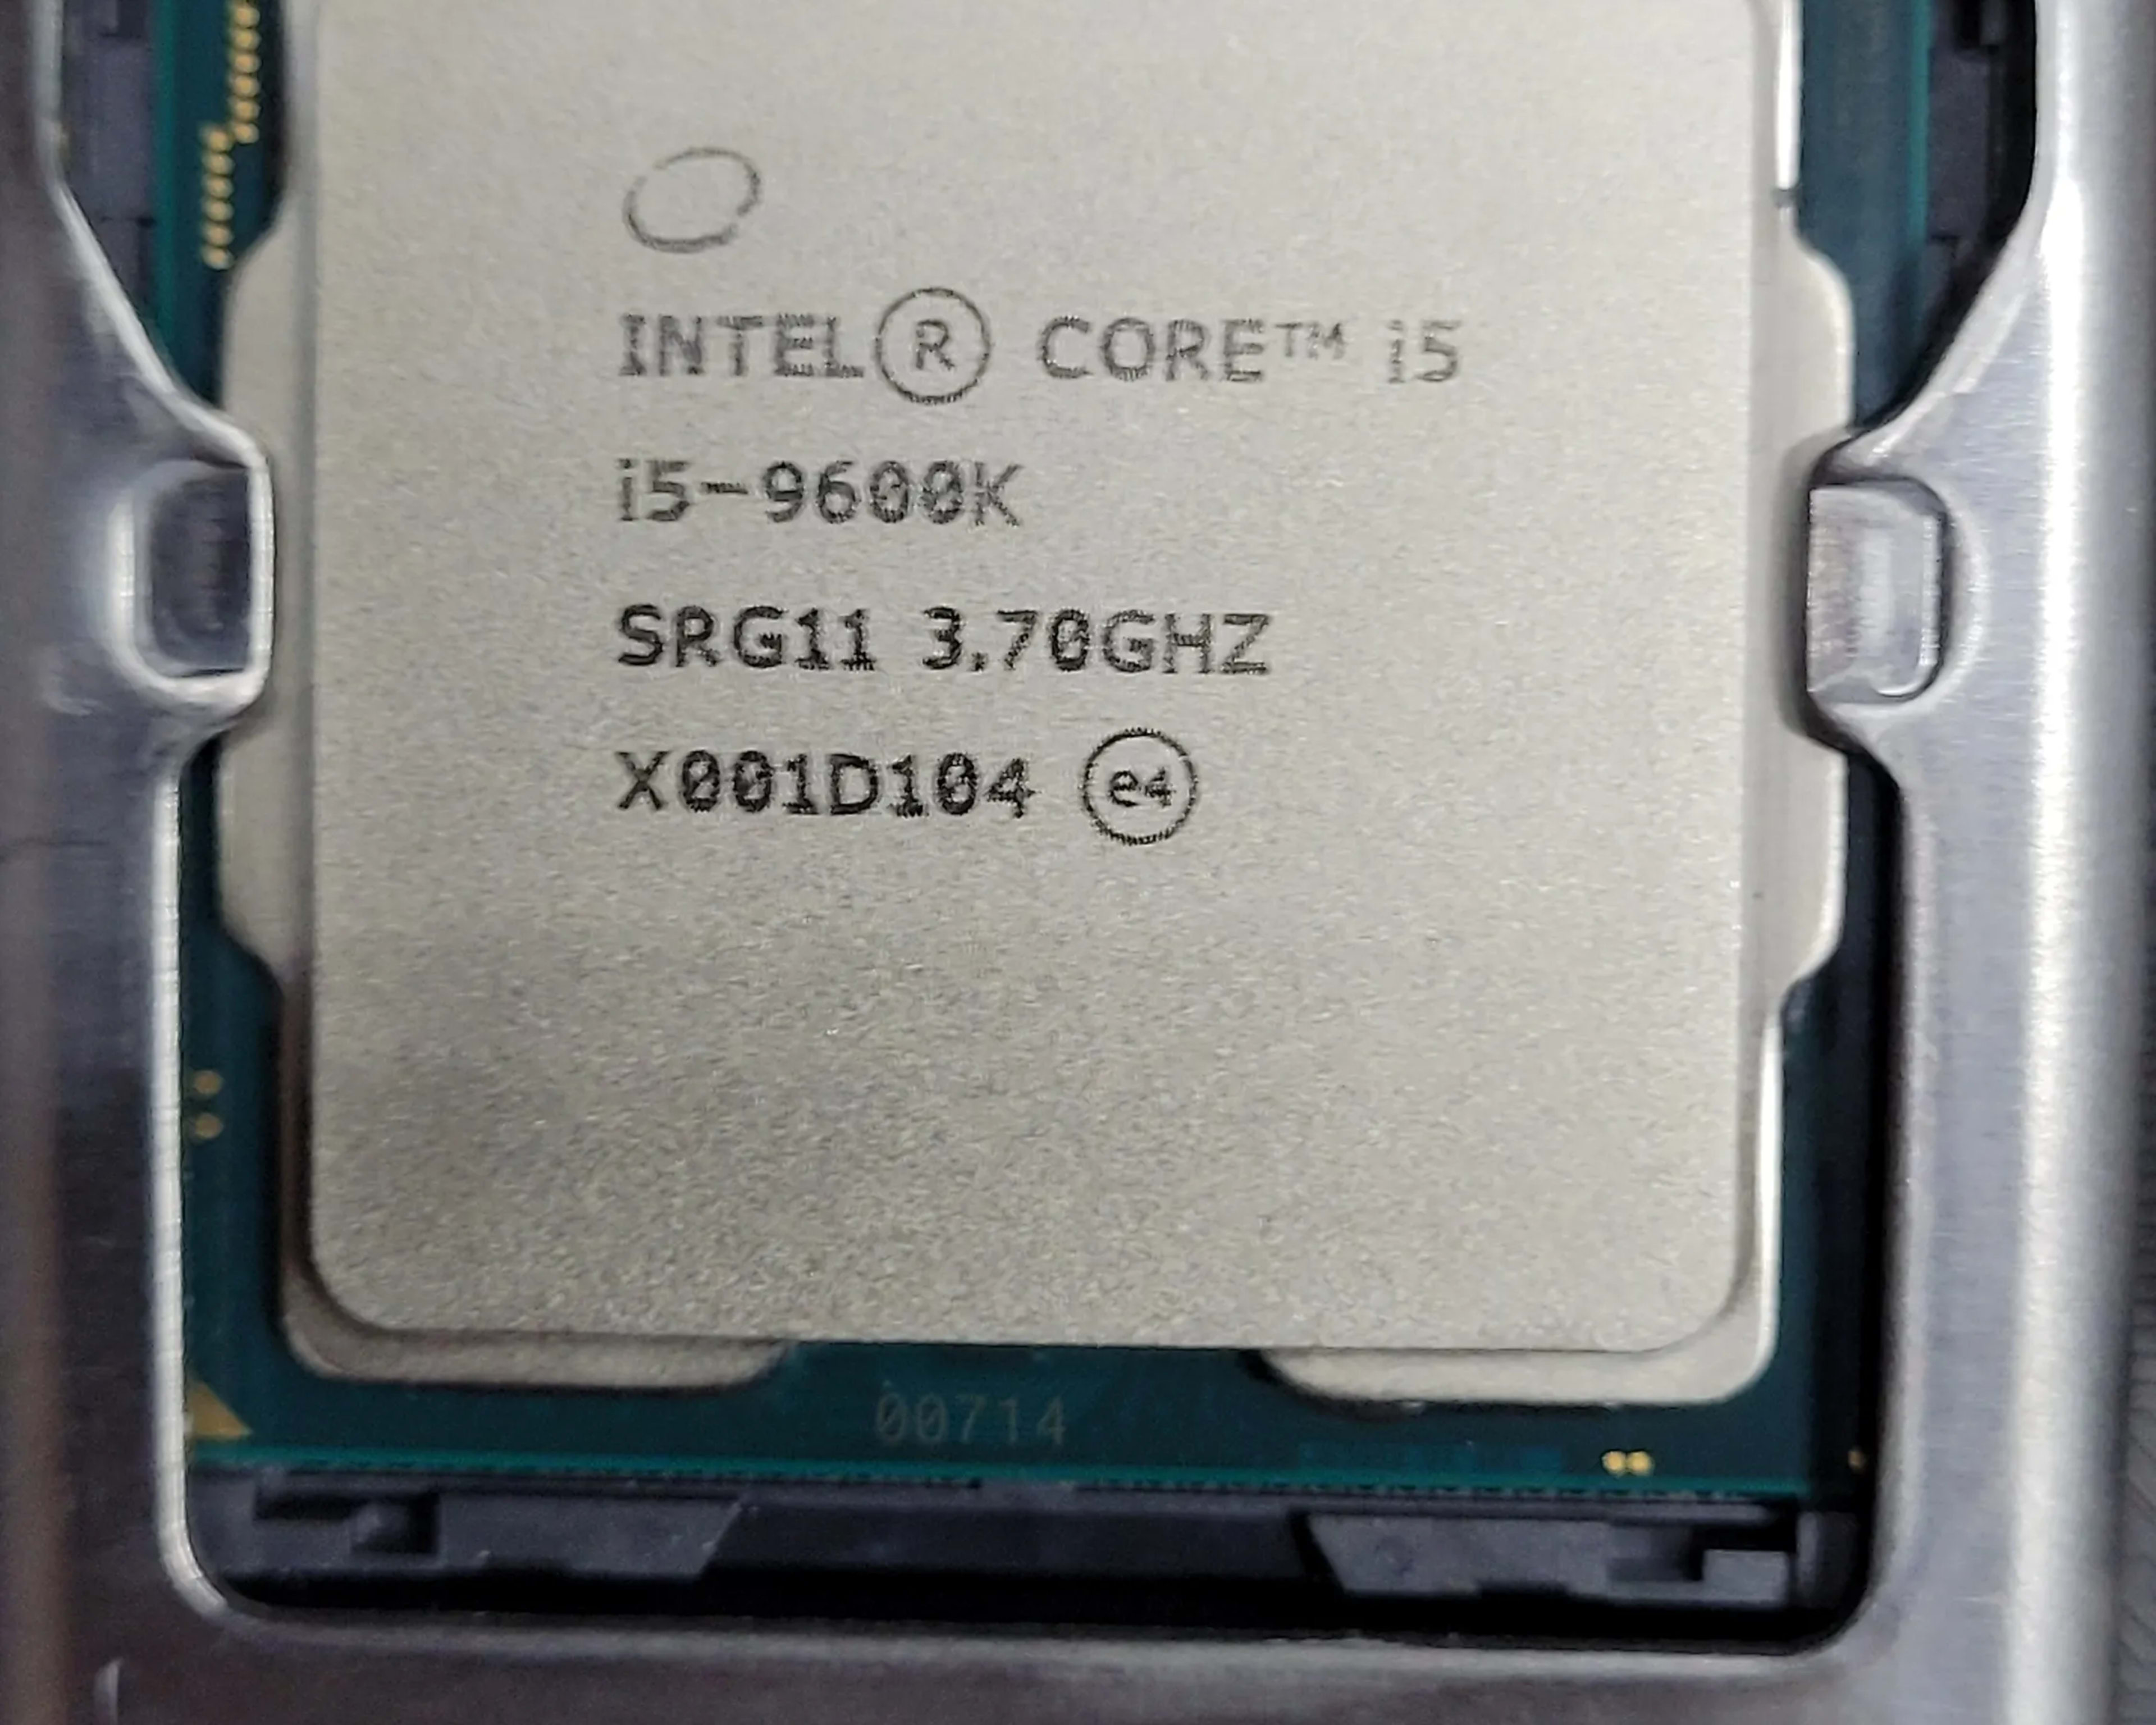 Intel i5-9600k cpu